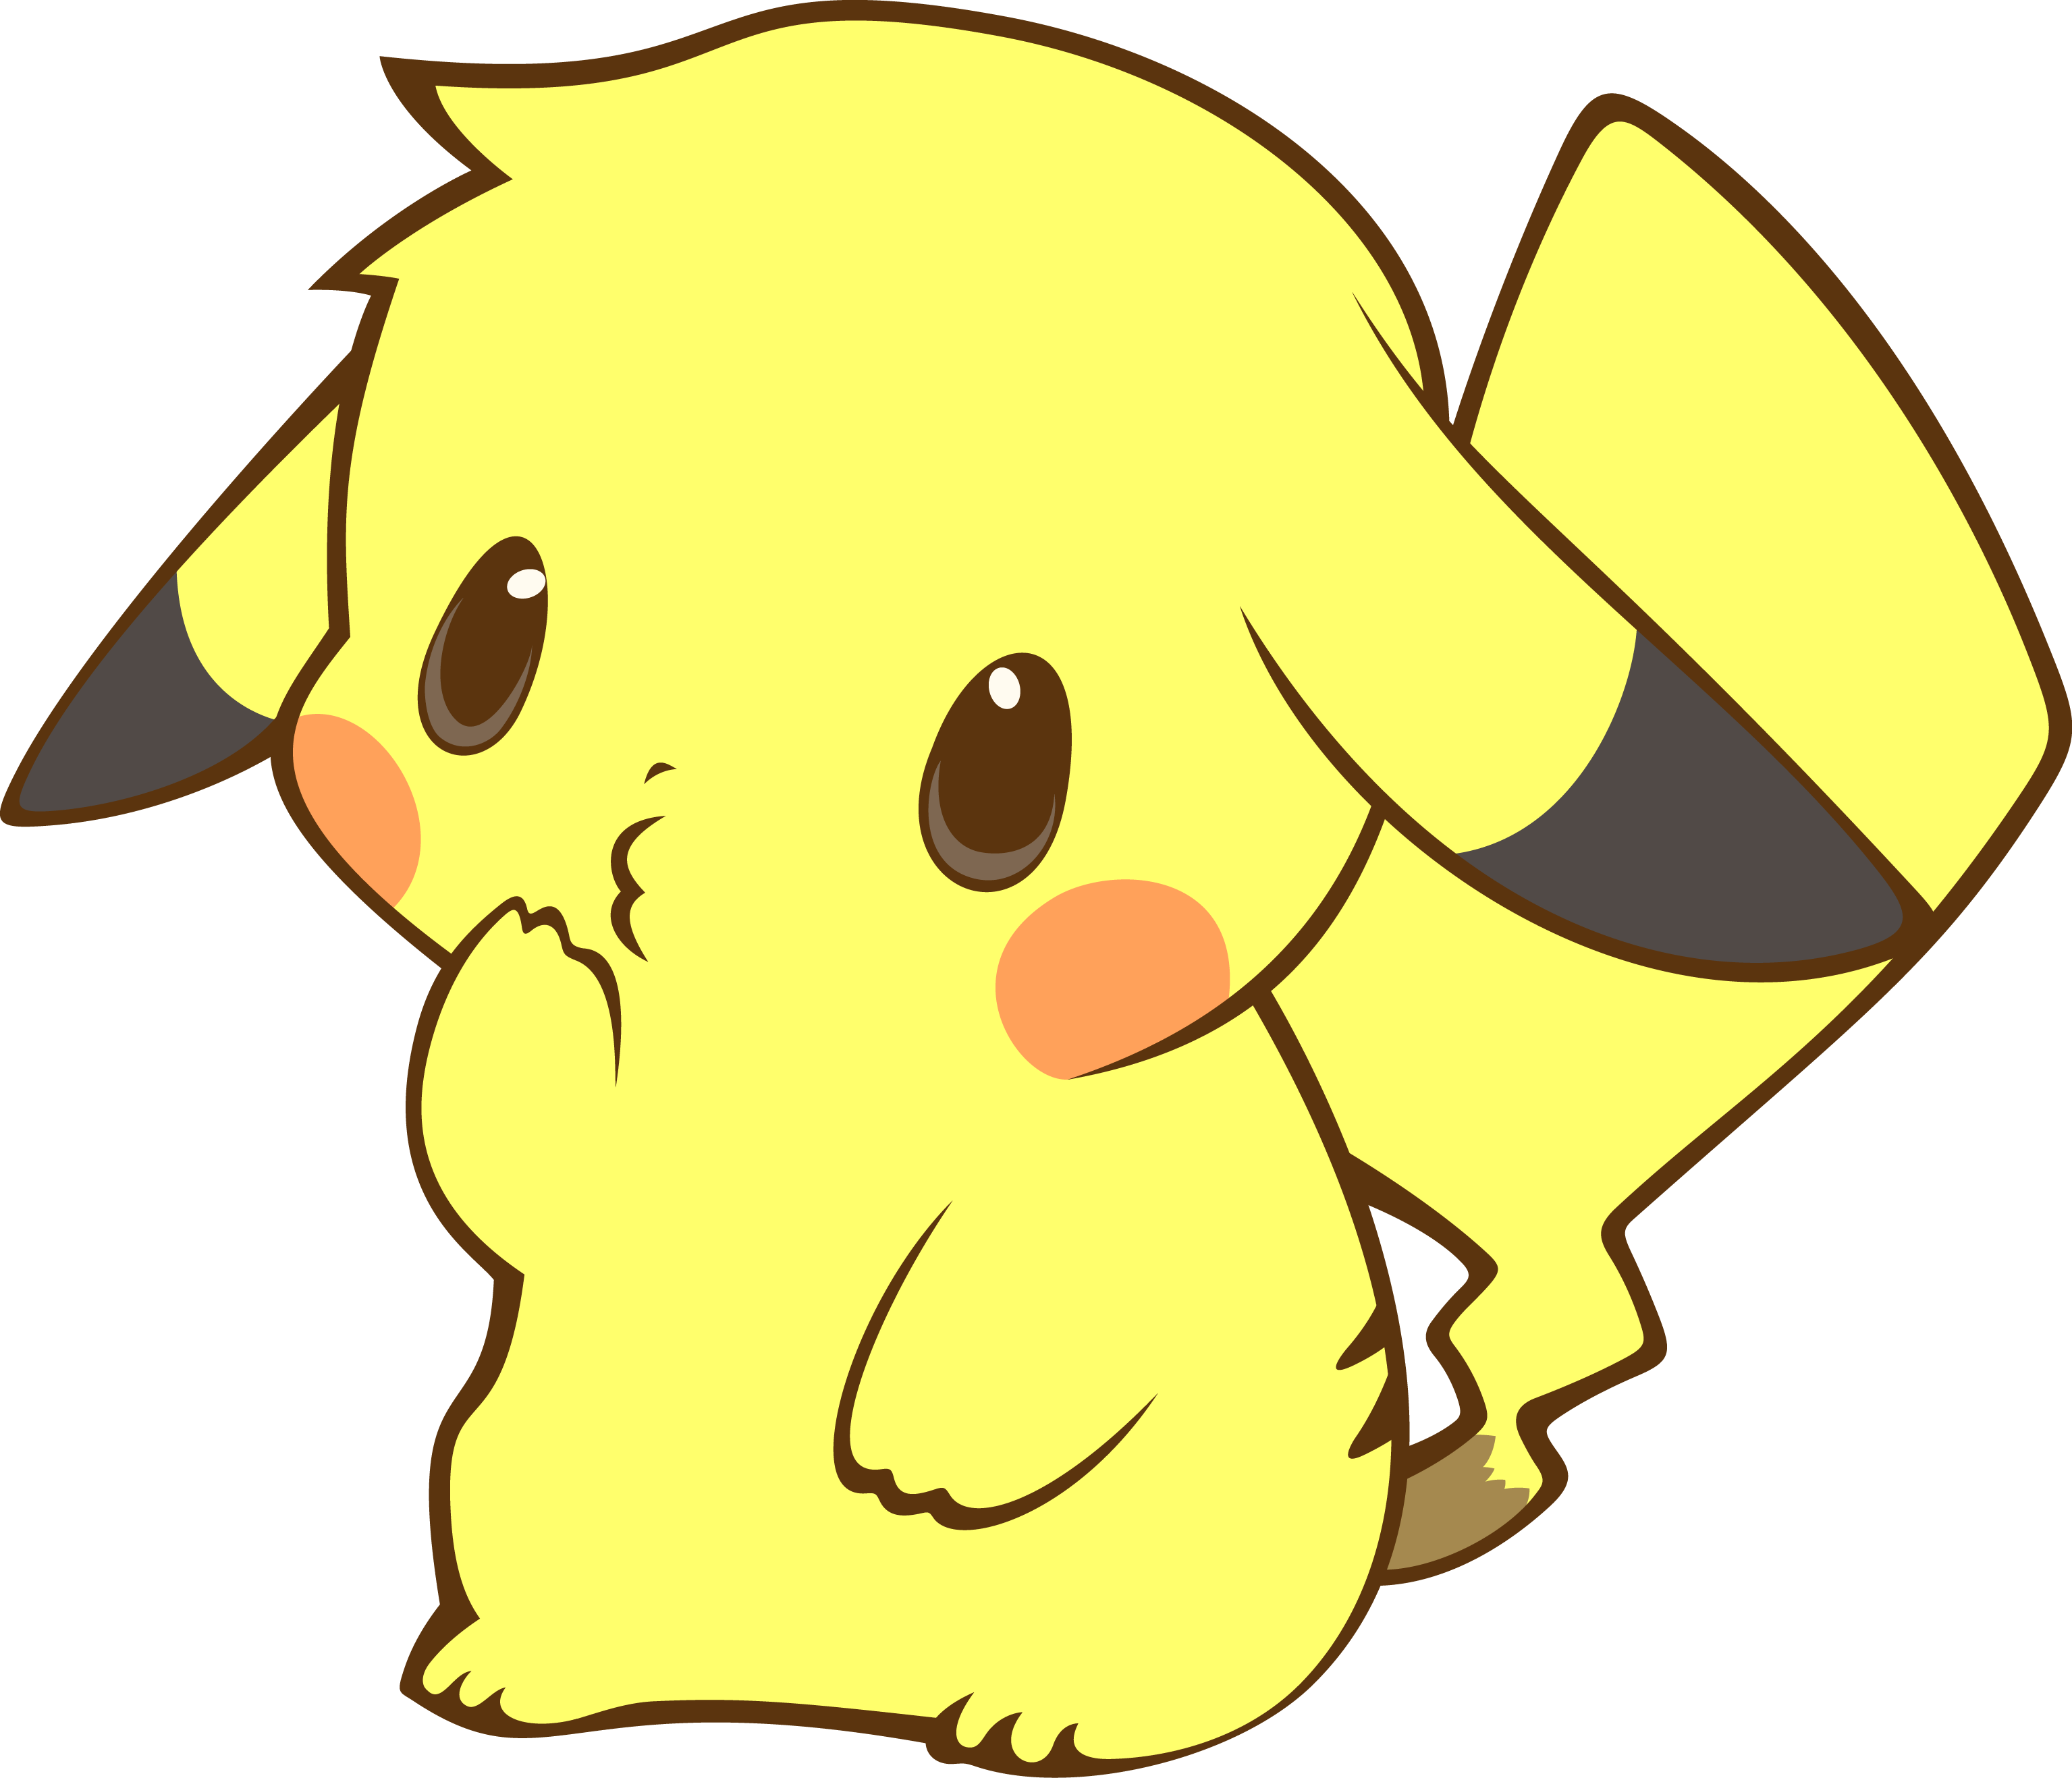 Wallpaper Pikachu sẽ mang đến cho bạn một bầu không khí tươi mới và đầy sức sống. Với giọng nói ngọt ngào của Pikachu, bạn sẽ cảm thấy thật gần gũi và thân thiết với Pokemon yêu thích của mình.